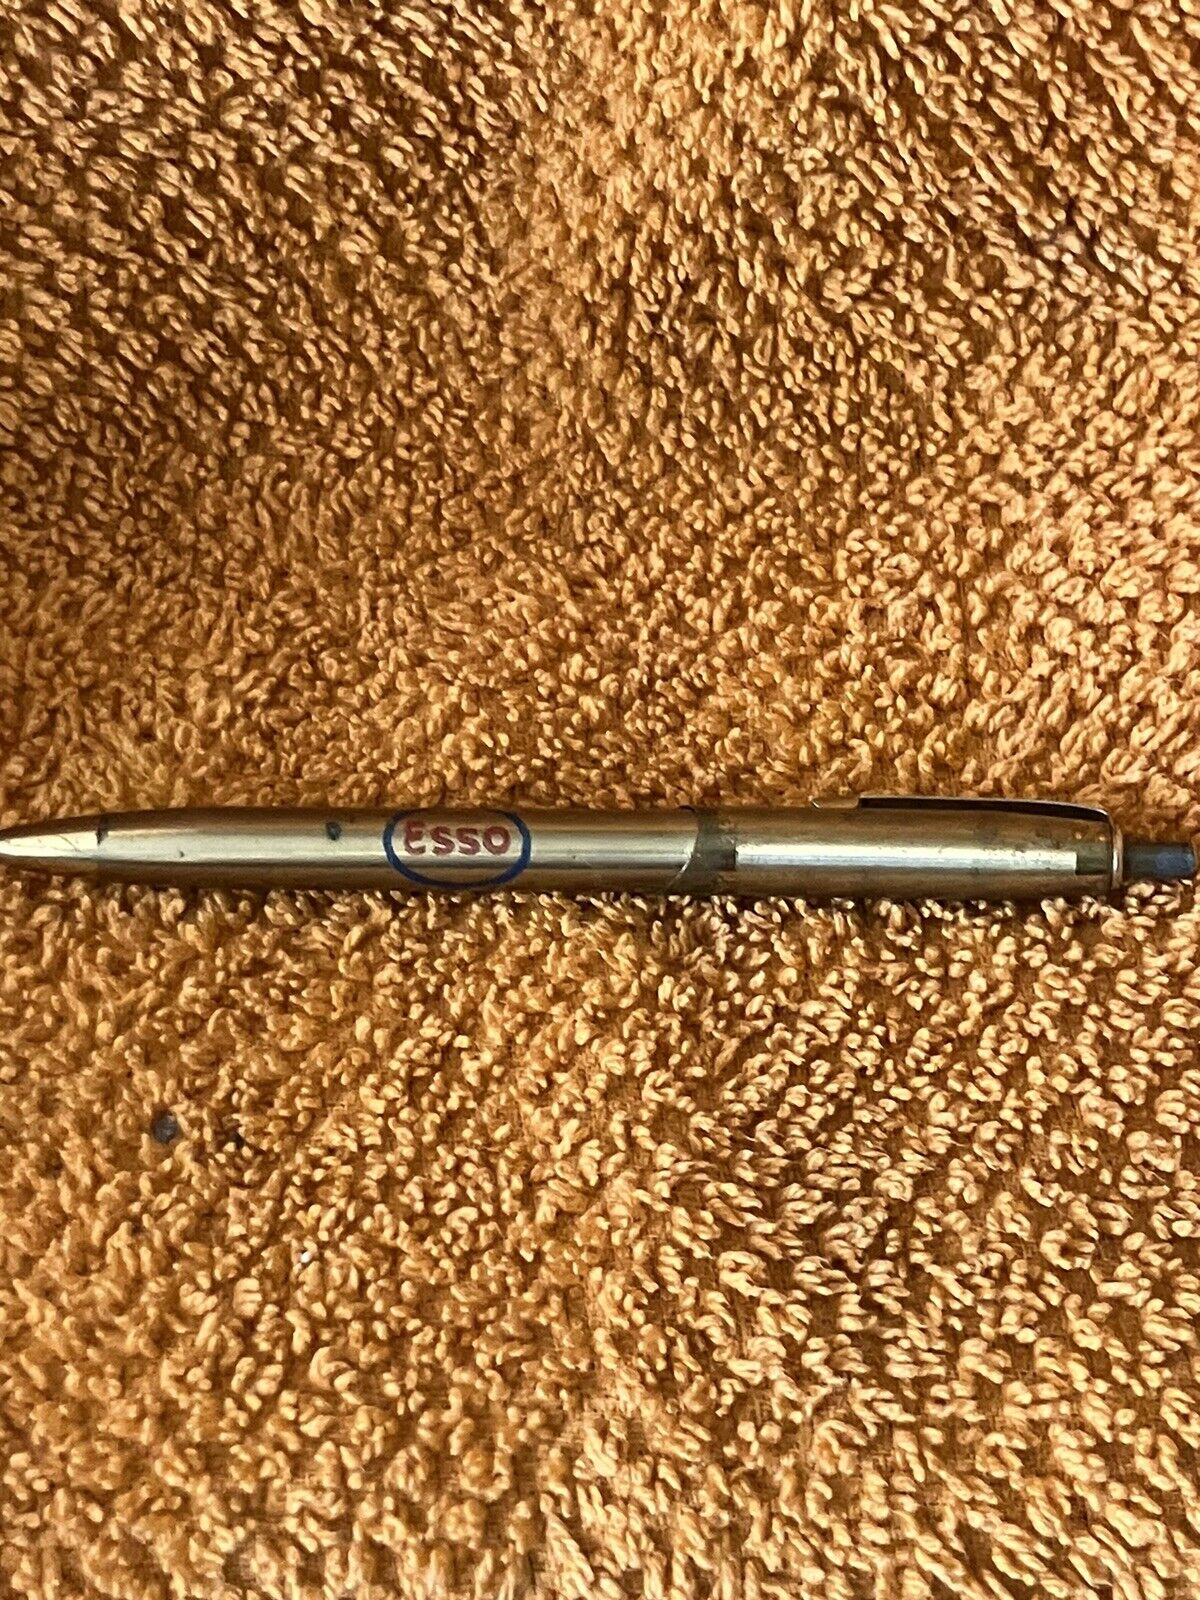 Vintage Esso Pen